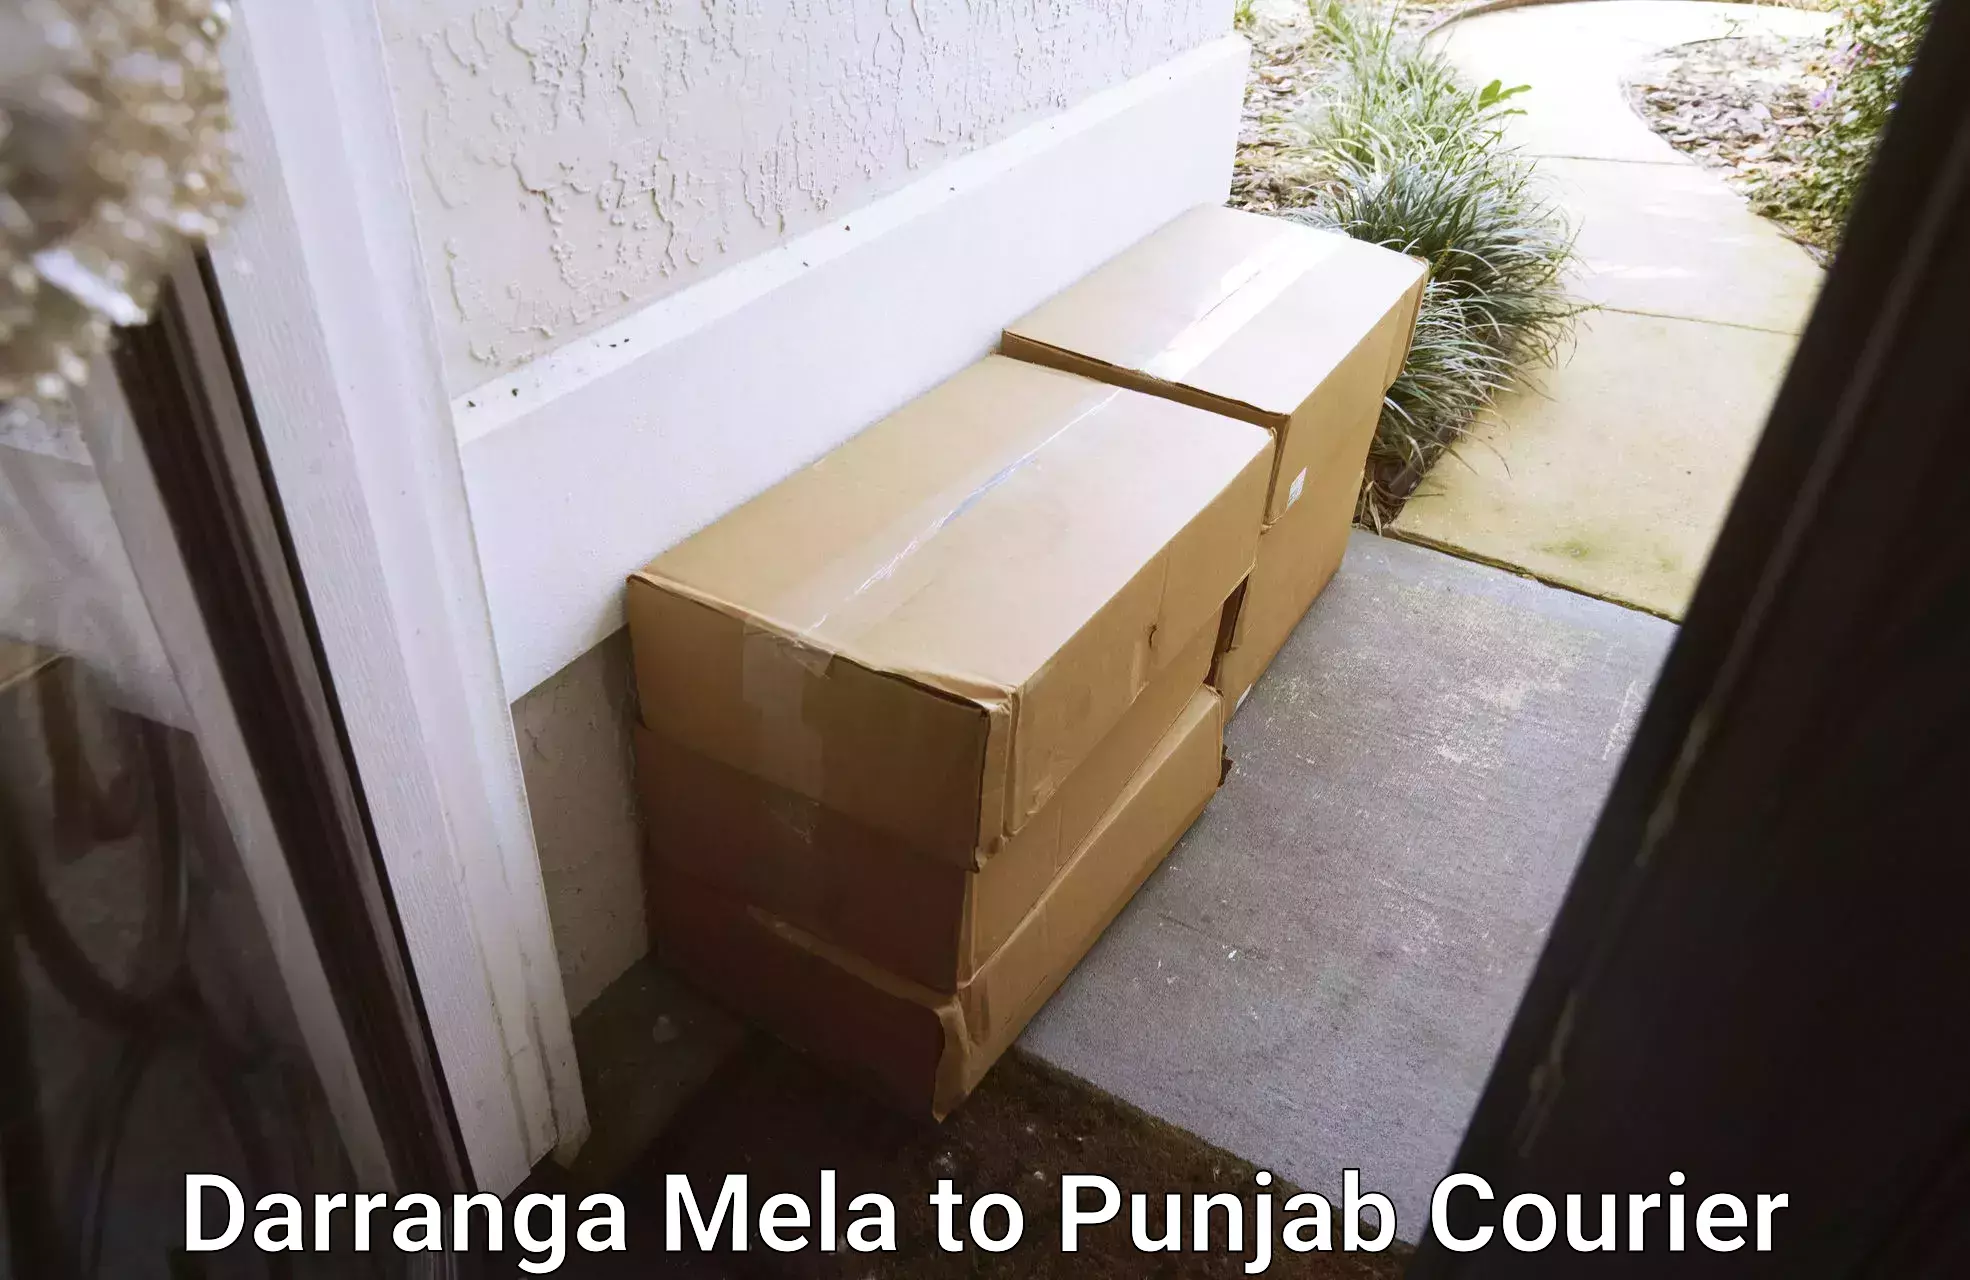 Innovative logistics solutions Darranga Mela to Sangrur